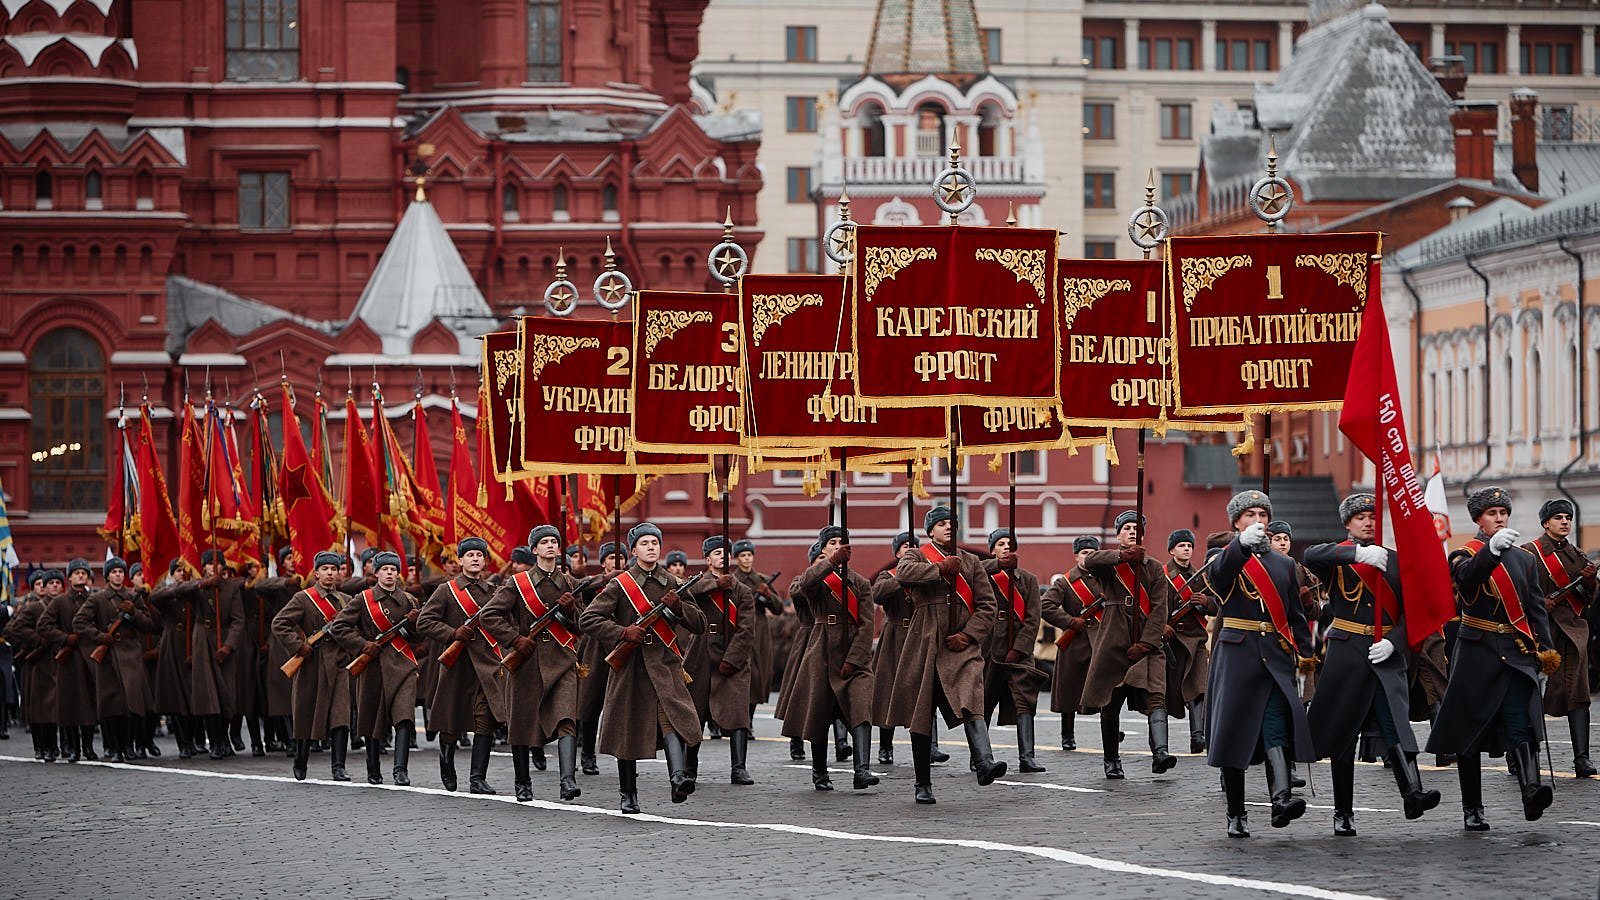 Где прошел первый парад. 24 Июня парад Победы в Москве 1945. Парад Победы на красной площади 1945. Парад 24 июня 1945 года в Москве на красной площади. Знамя Победы на параде Победы 1945 года.